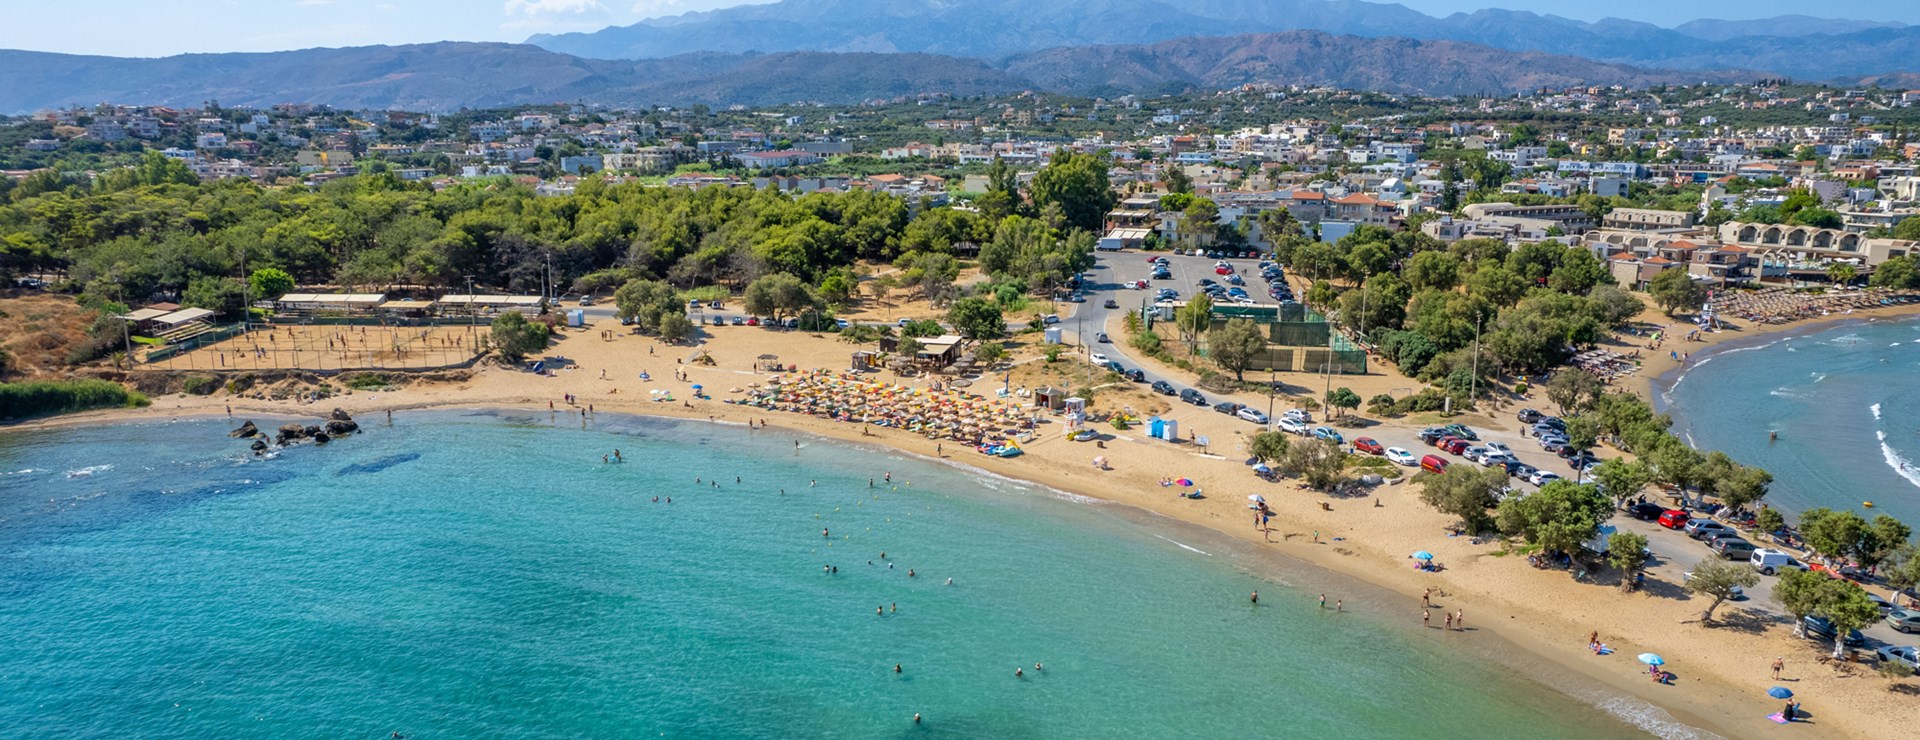 Ferie på Kreta – til smukke Chaniakyst